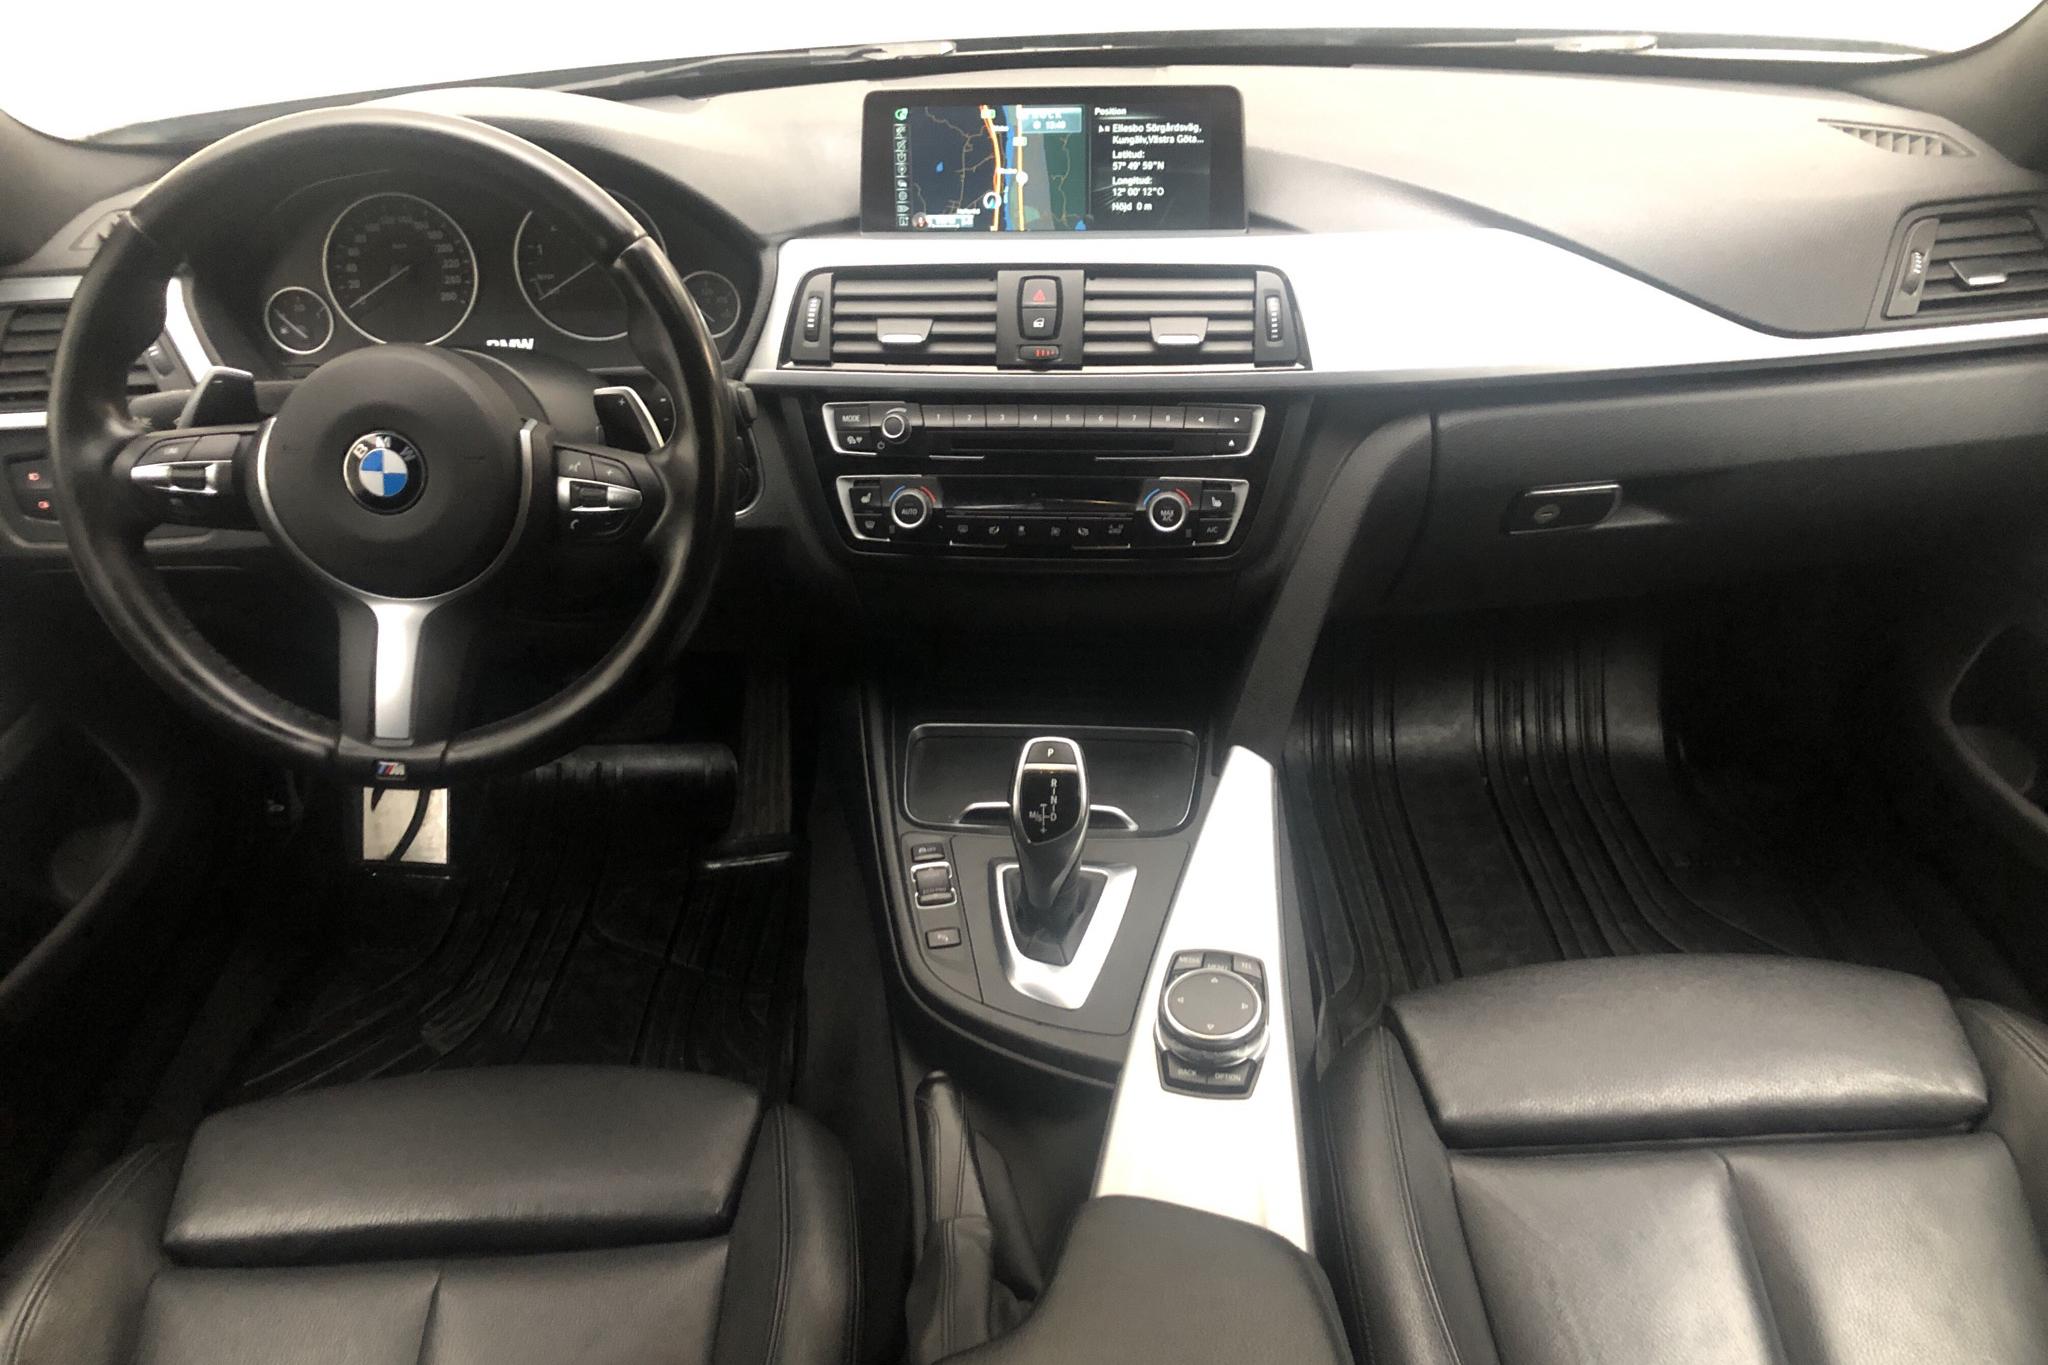 BMW 428i xDrive Gran Coupé, F36 (245hk) - 131 370 km - Automatic - black - 2016